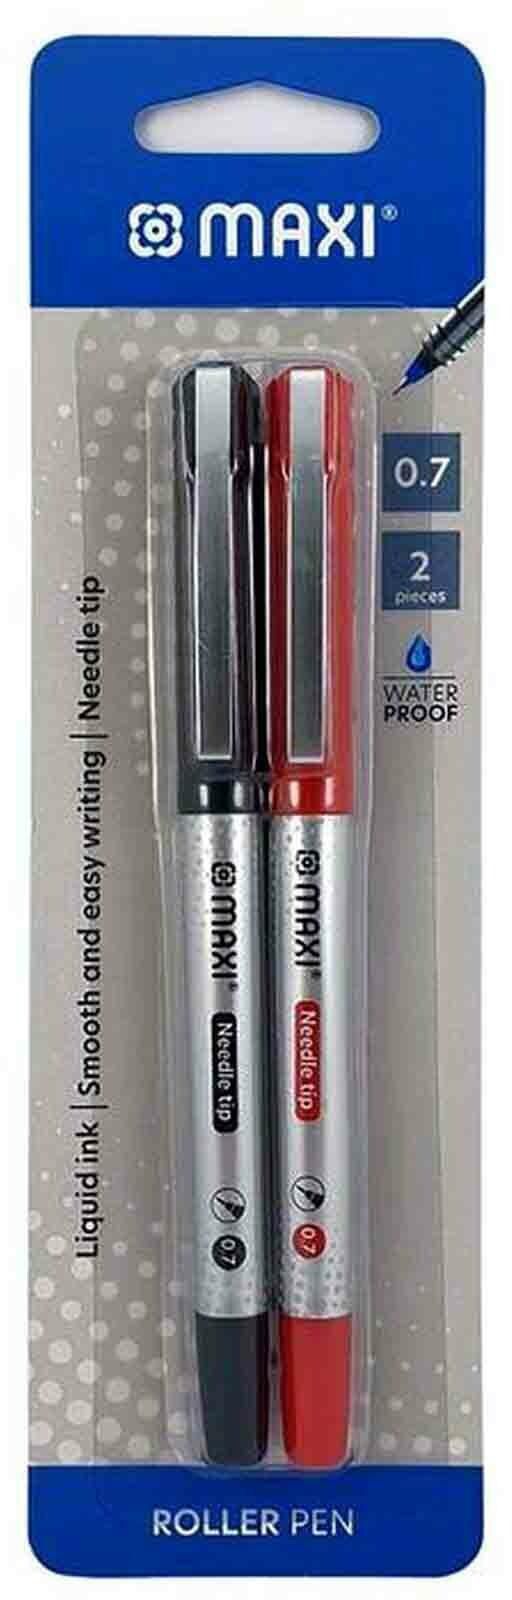 Maxi Roller Pen Blue 0.7mm 2 PCS